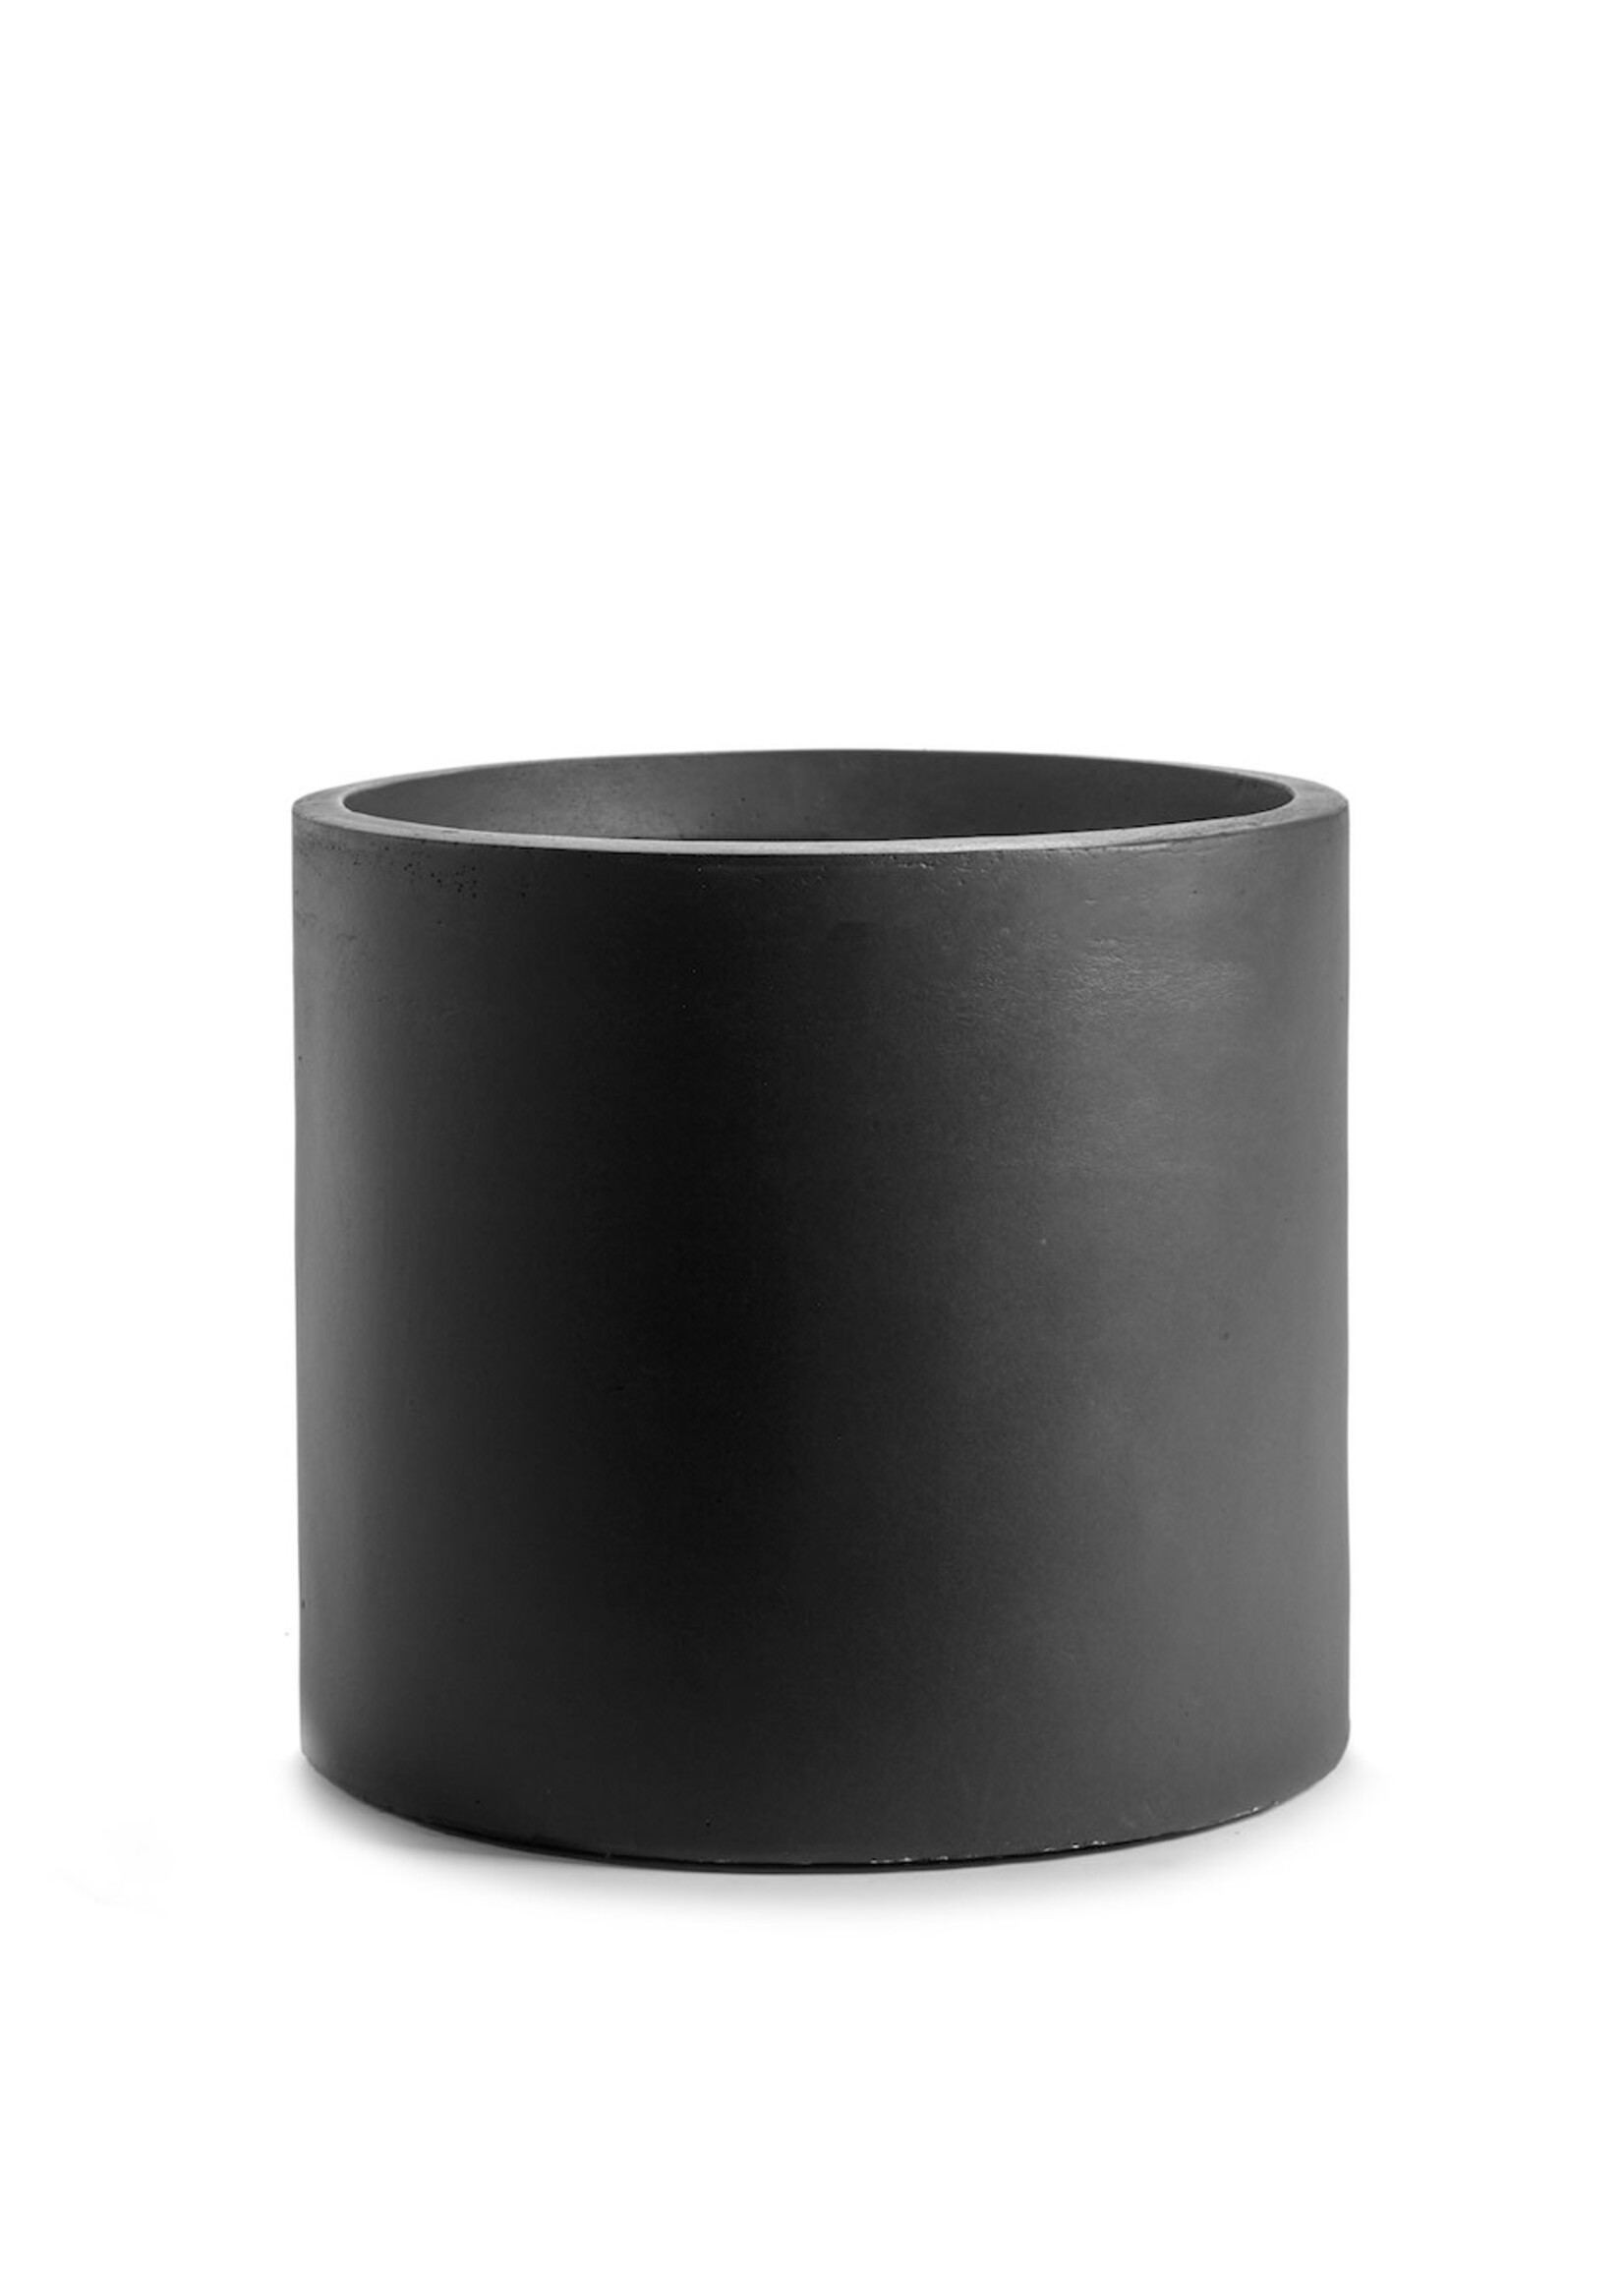 Pot huge Ø49 h48 - black